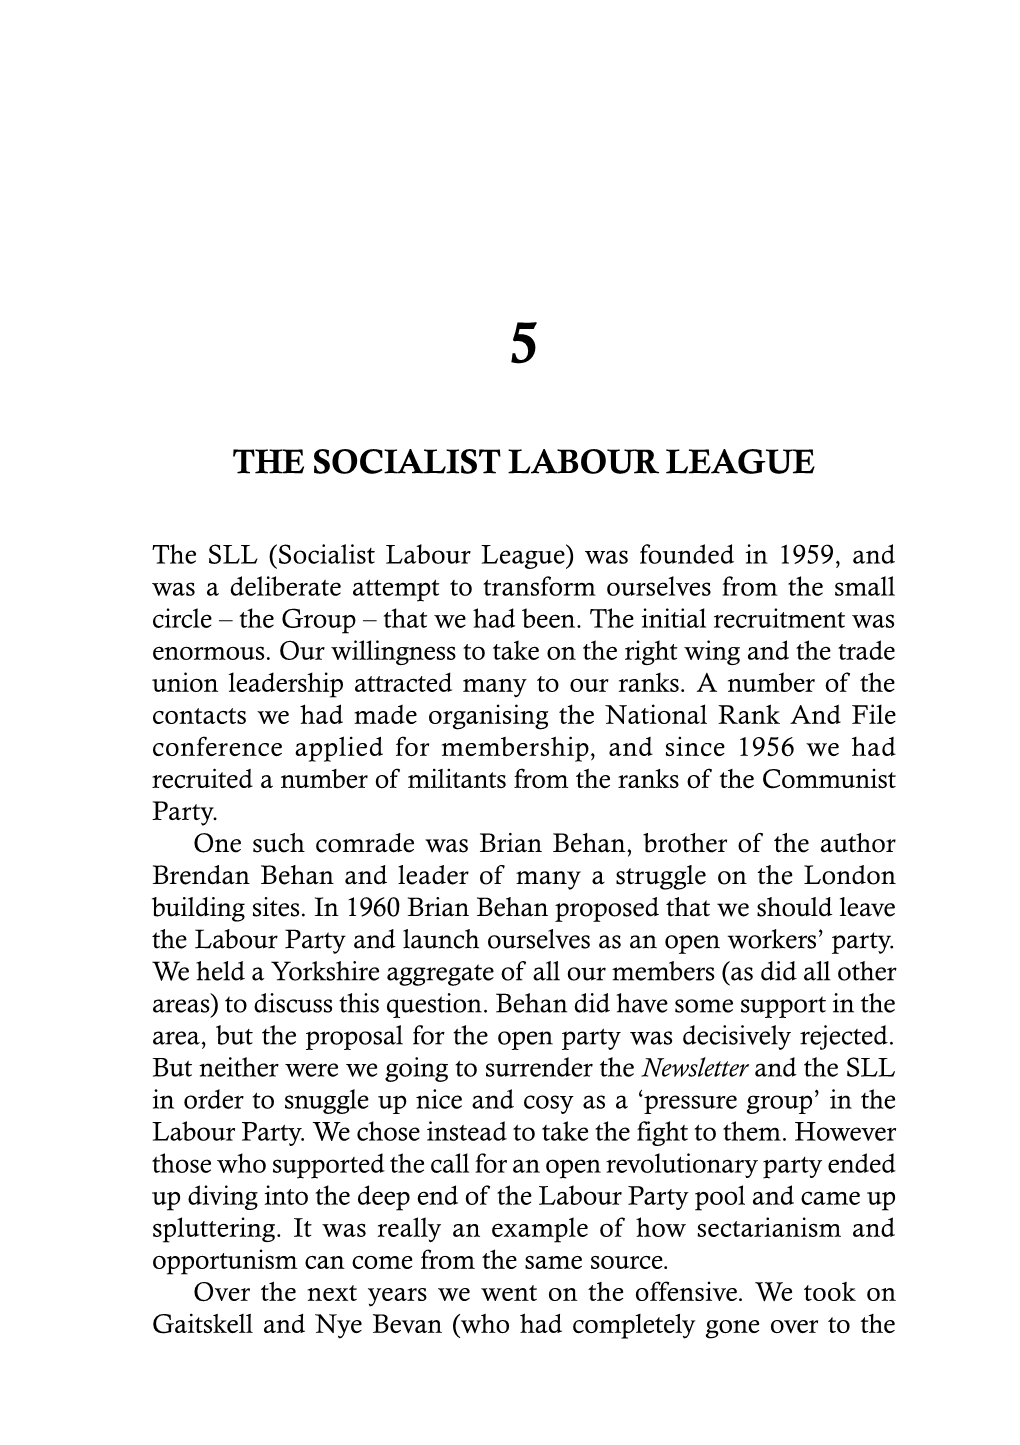 The Socialist Labour League